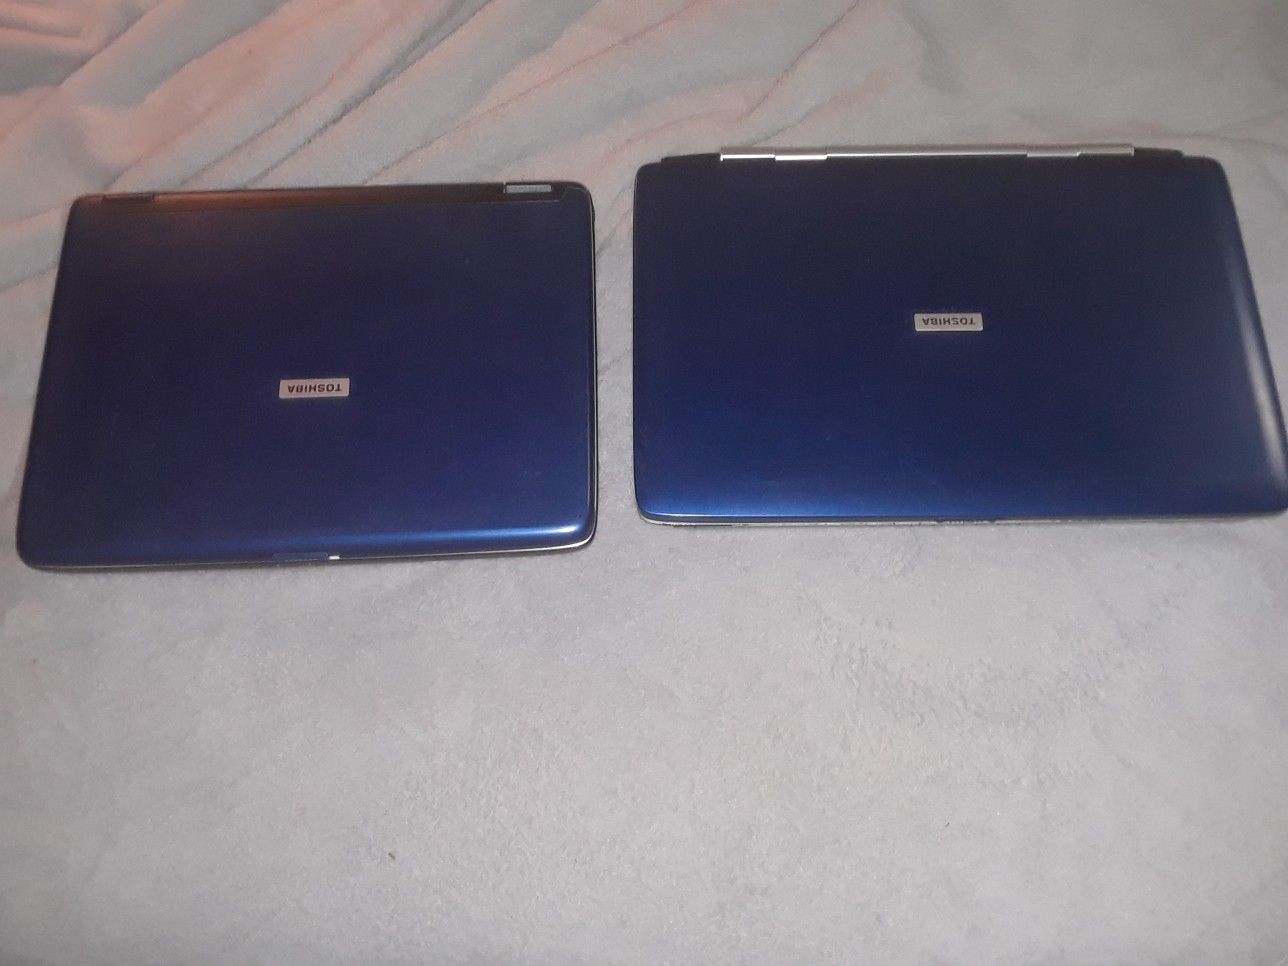 TWO Toshiba Satellite A75 Laptops